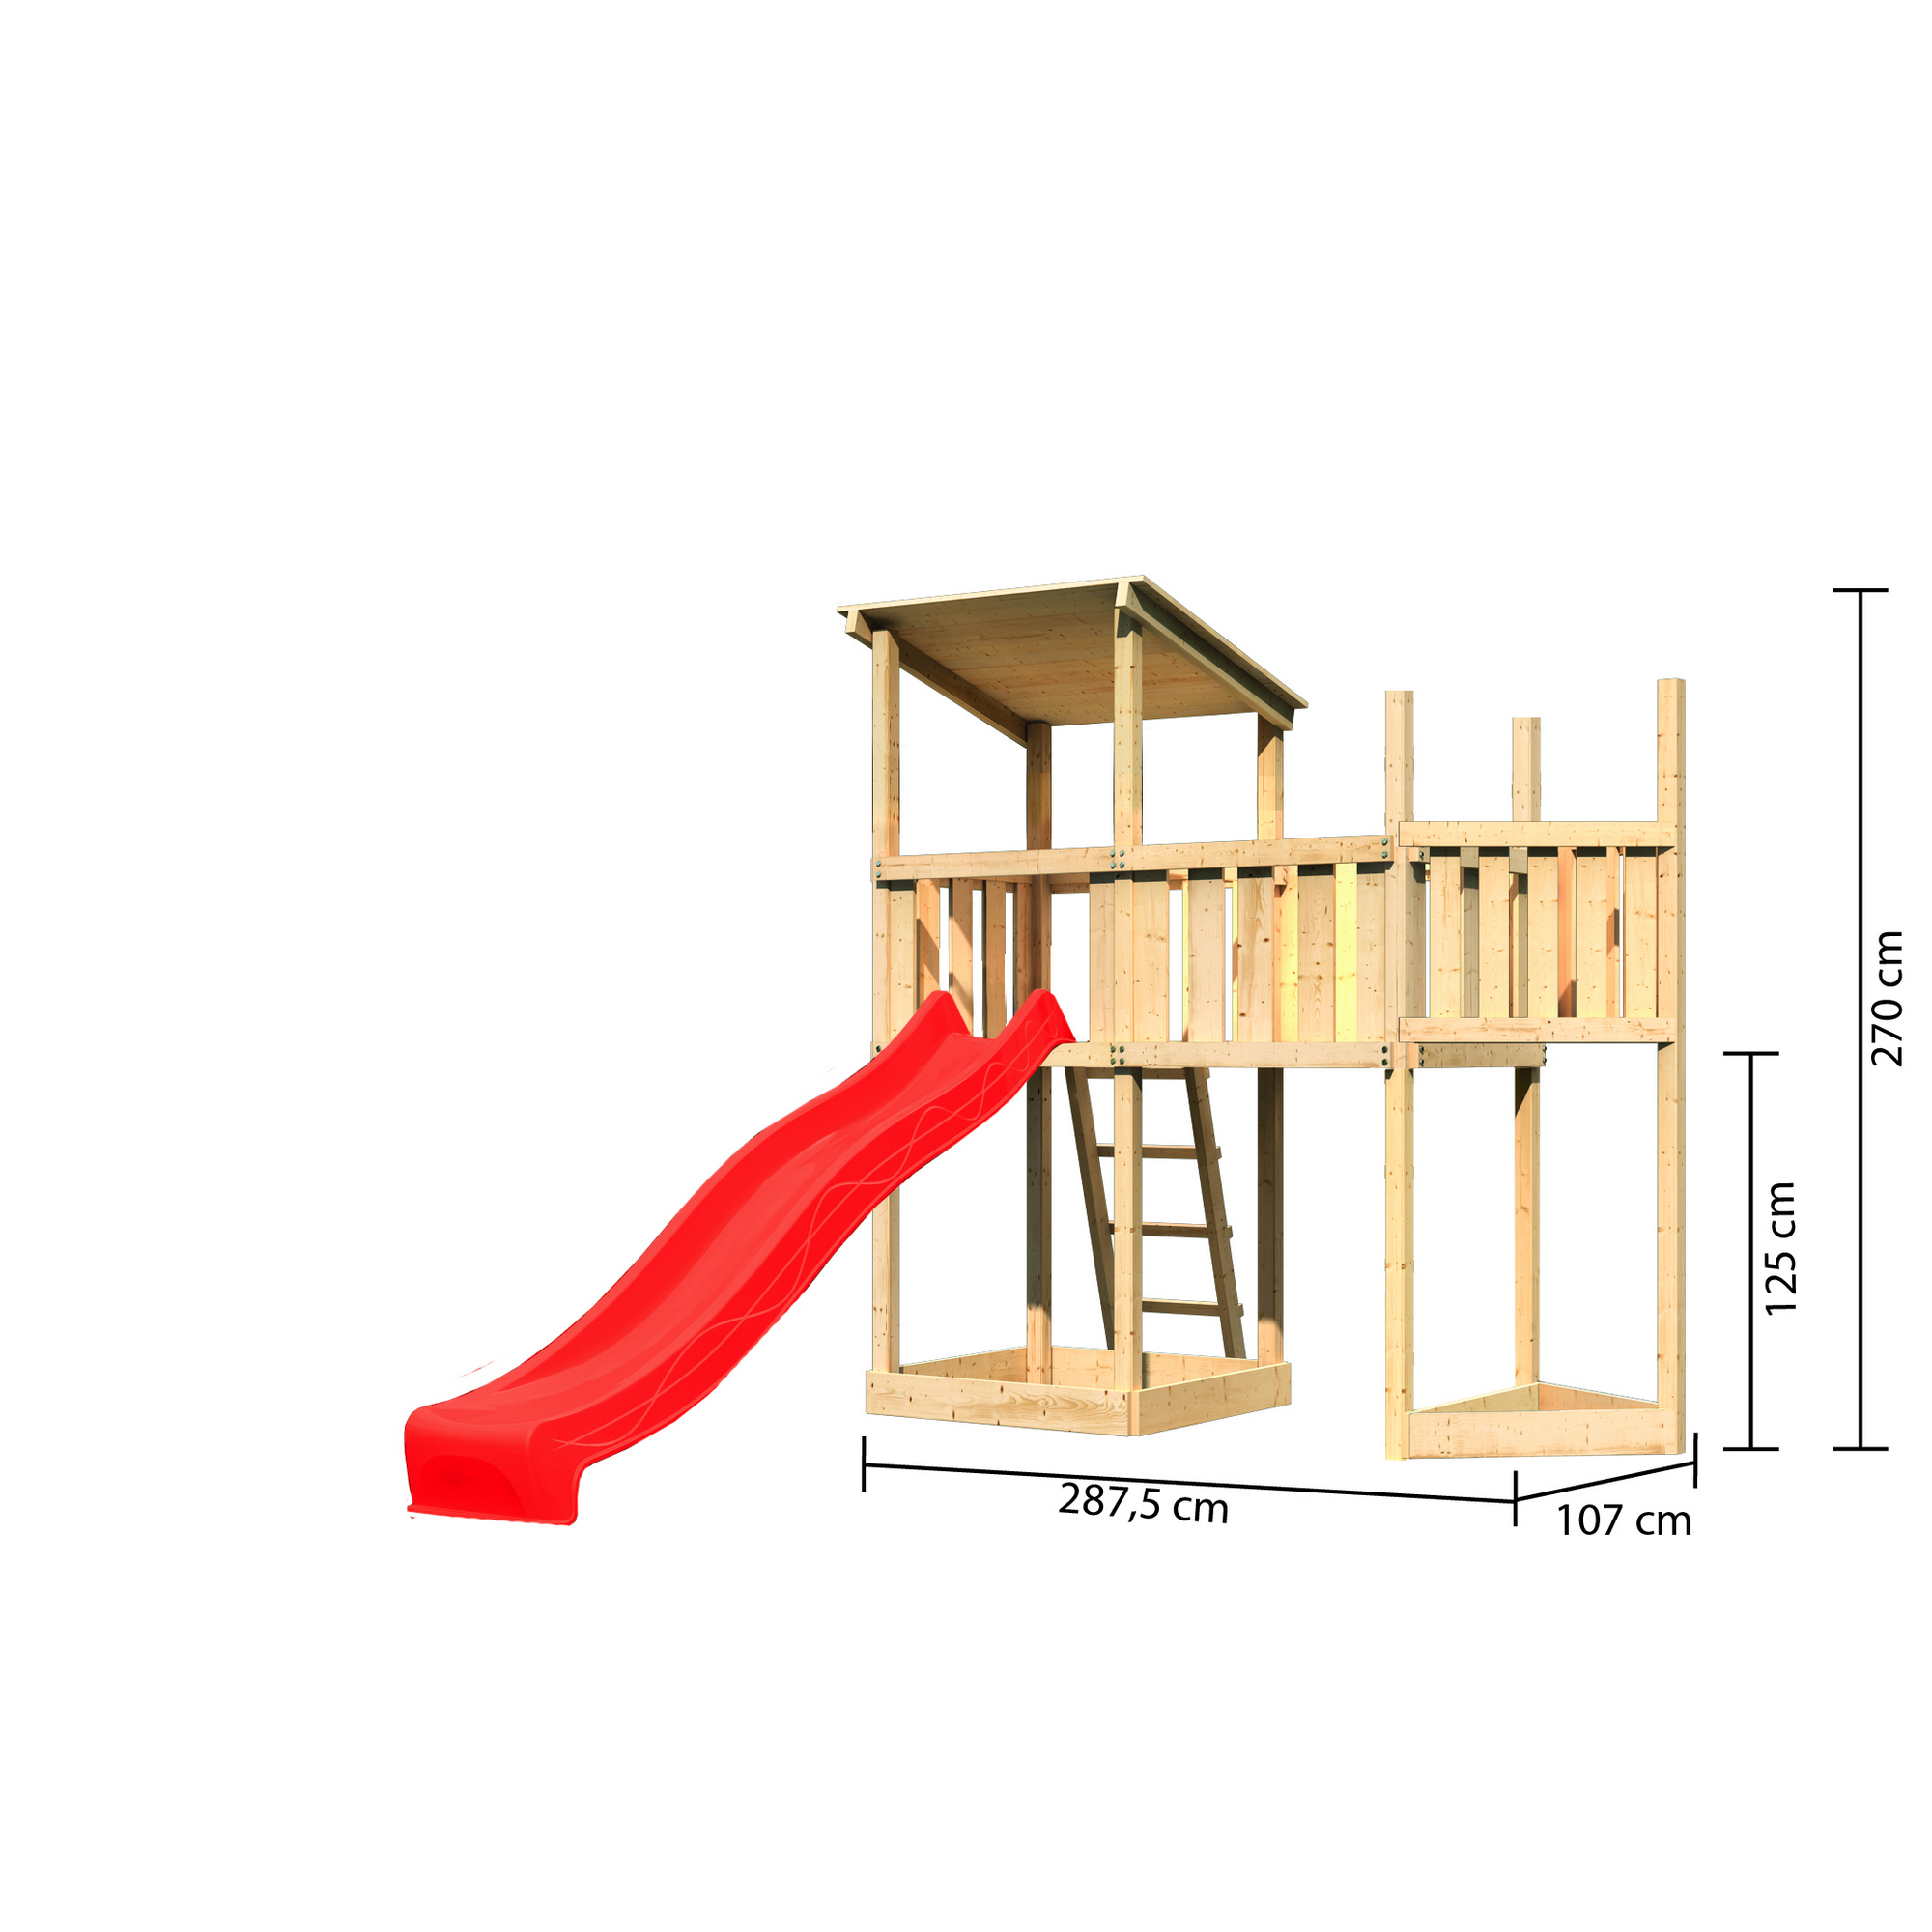 Spielturm 'Anna' Schiffsanbau oben, Anbauplattform, Rutsche rot, 287,5 x 107 x 270 cm + product picture